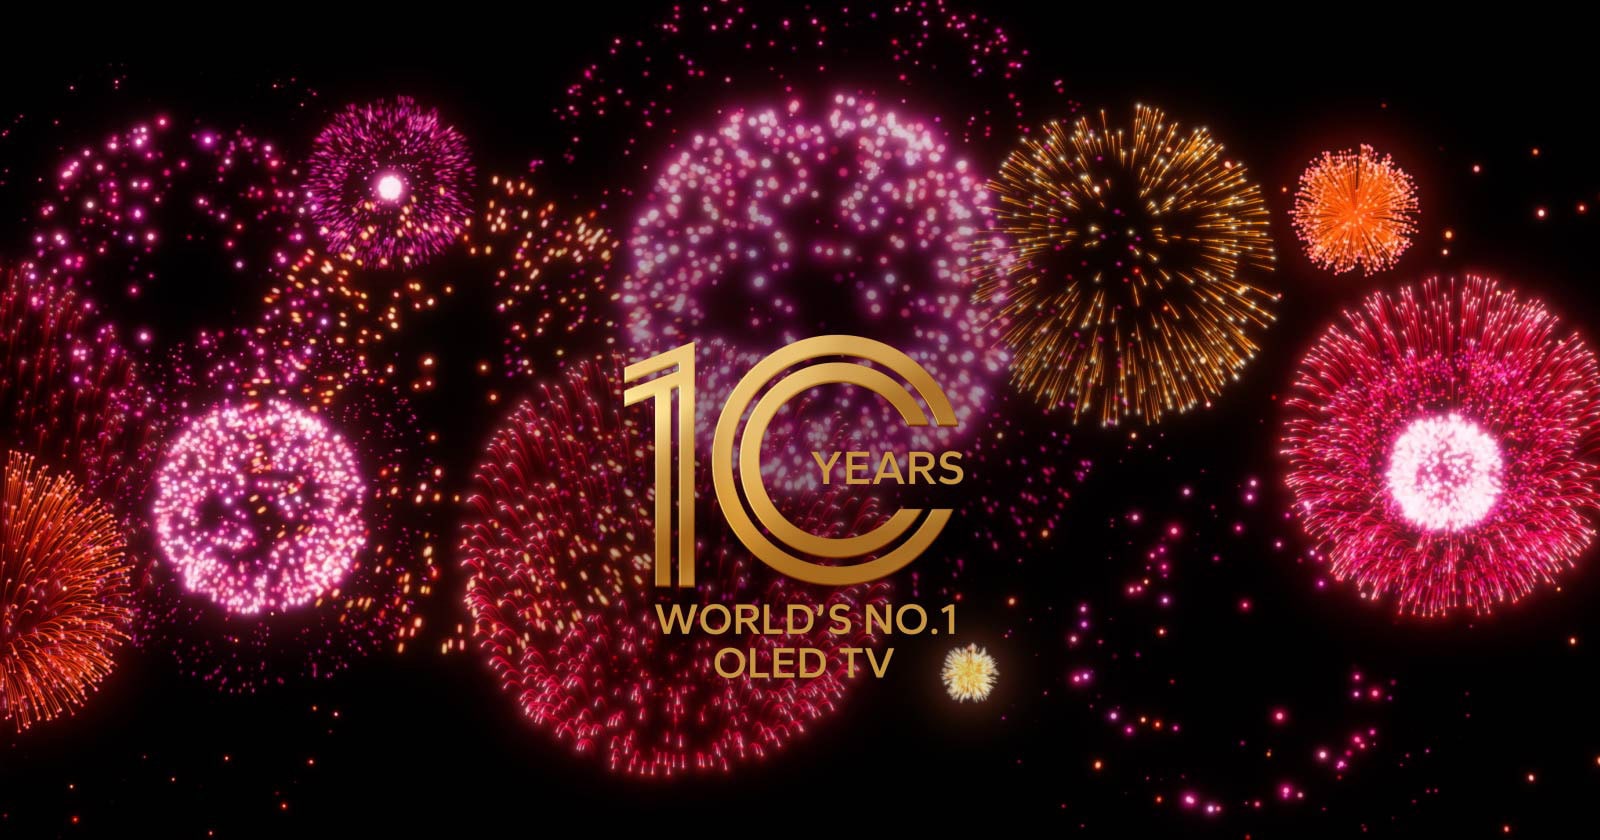 Film pokazuje napis Od 10 lat telewizor OLED nr 1 na świecie, który stopniowo pojawia się na czarnym tle z fioletowymi, różowymi i pomarańczowymi fajerwerkami. 